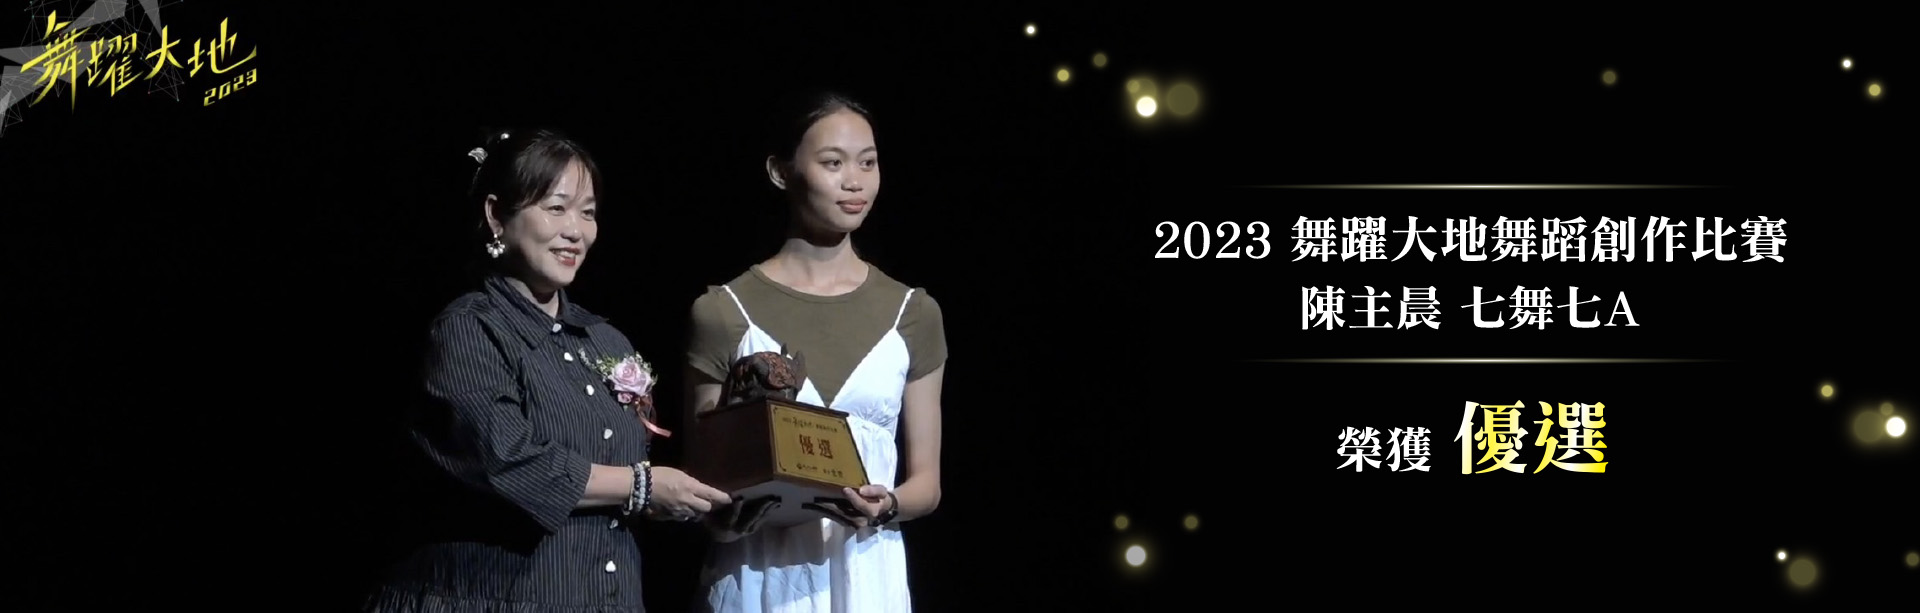 舞蹈系參加「2023舞躍大地舞蹈創作比賽」榮獲優選